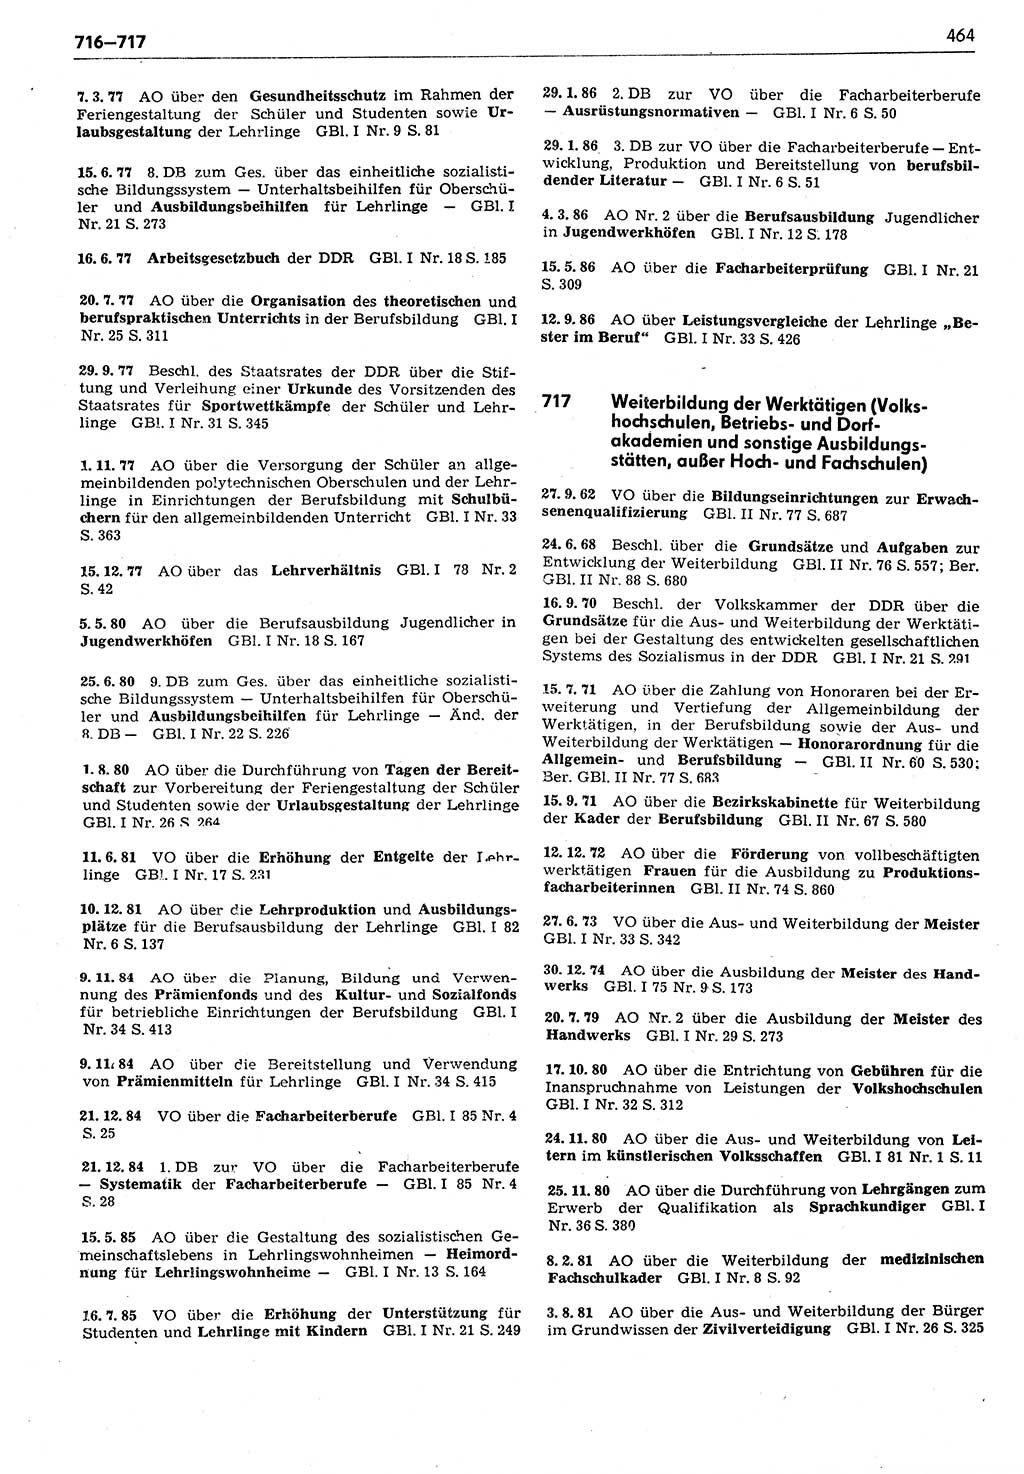 Das geltende Recht der Deutschen Demokratischen Republik (DDR) 1949-1988, Seite 464 (Gelt. R. DDR 1949-1988, S. 464)